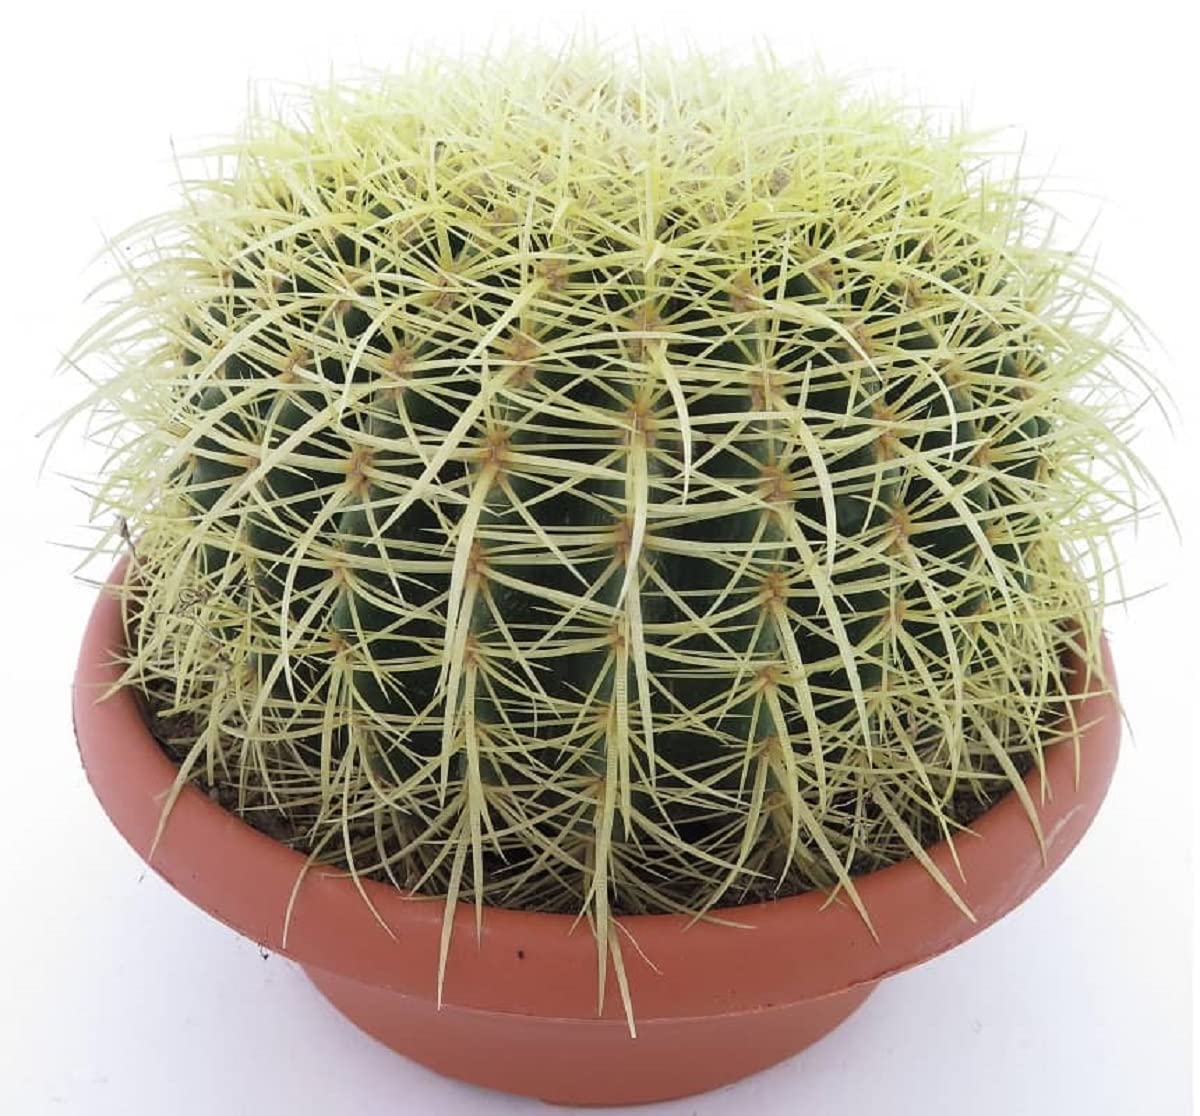 Kaktus Goldkugelkaktus - Echinocactus grusonii - Zimmerkaktus - Kugel Ø 25-27 cm, Topf Ø27 [3977]